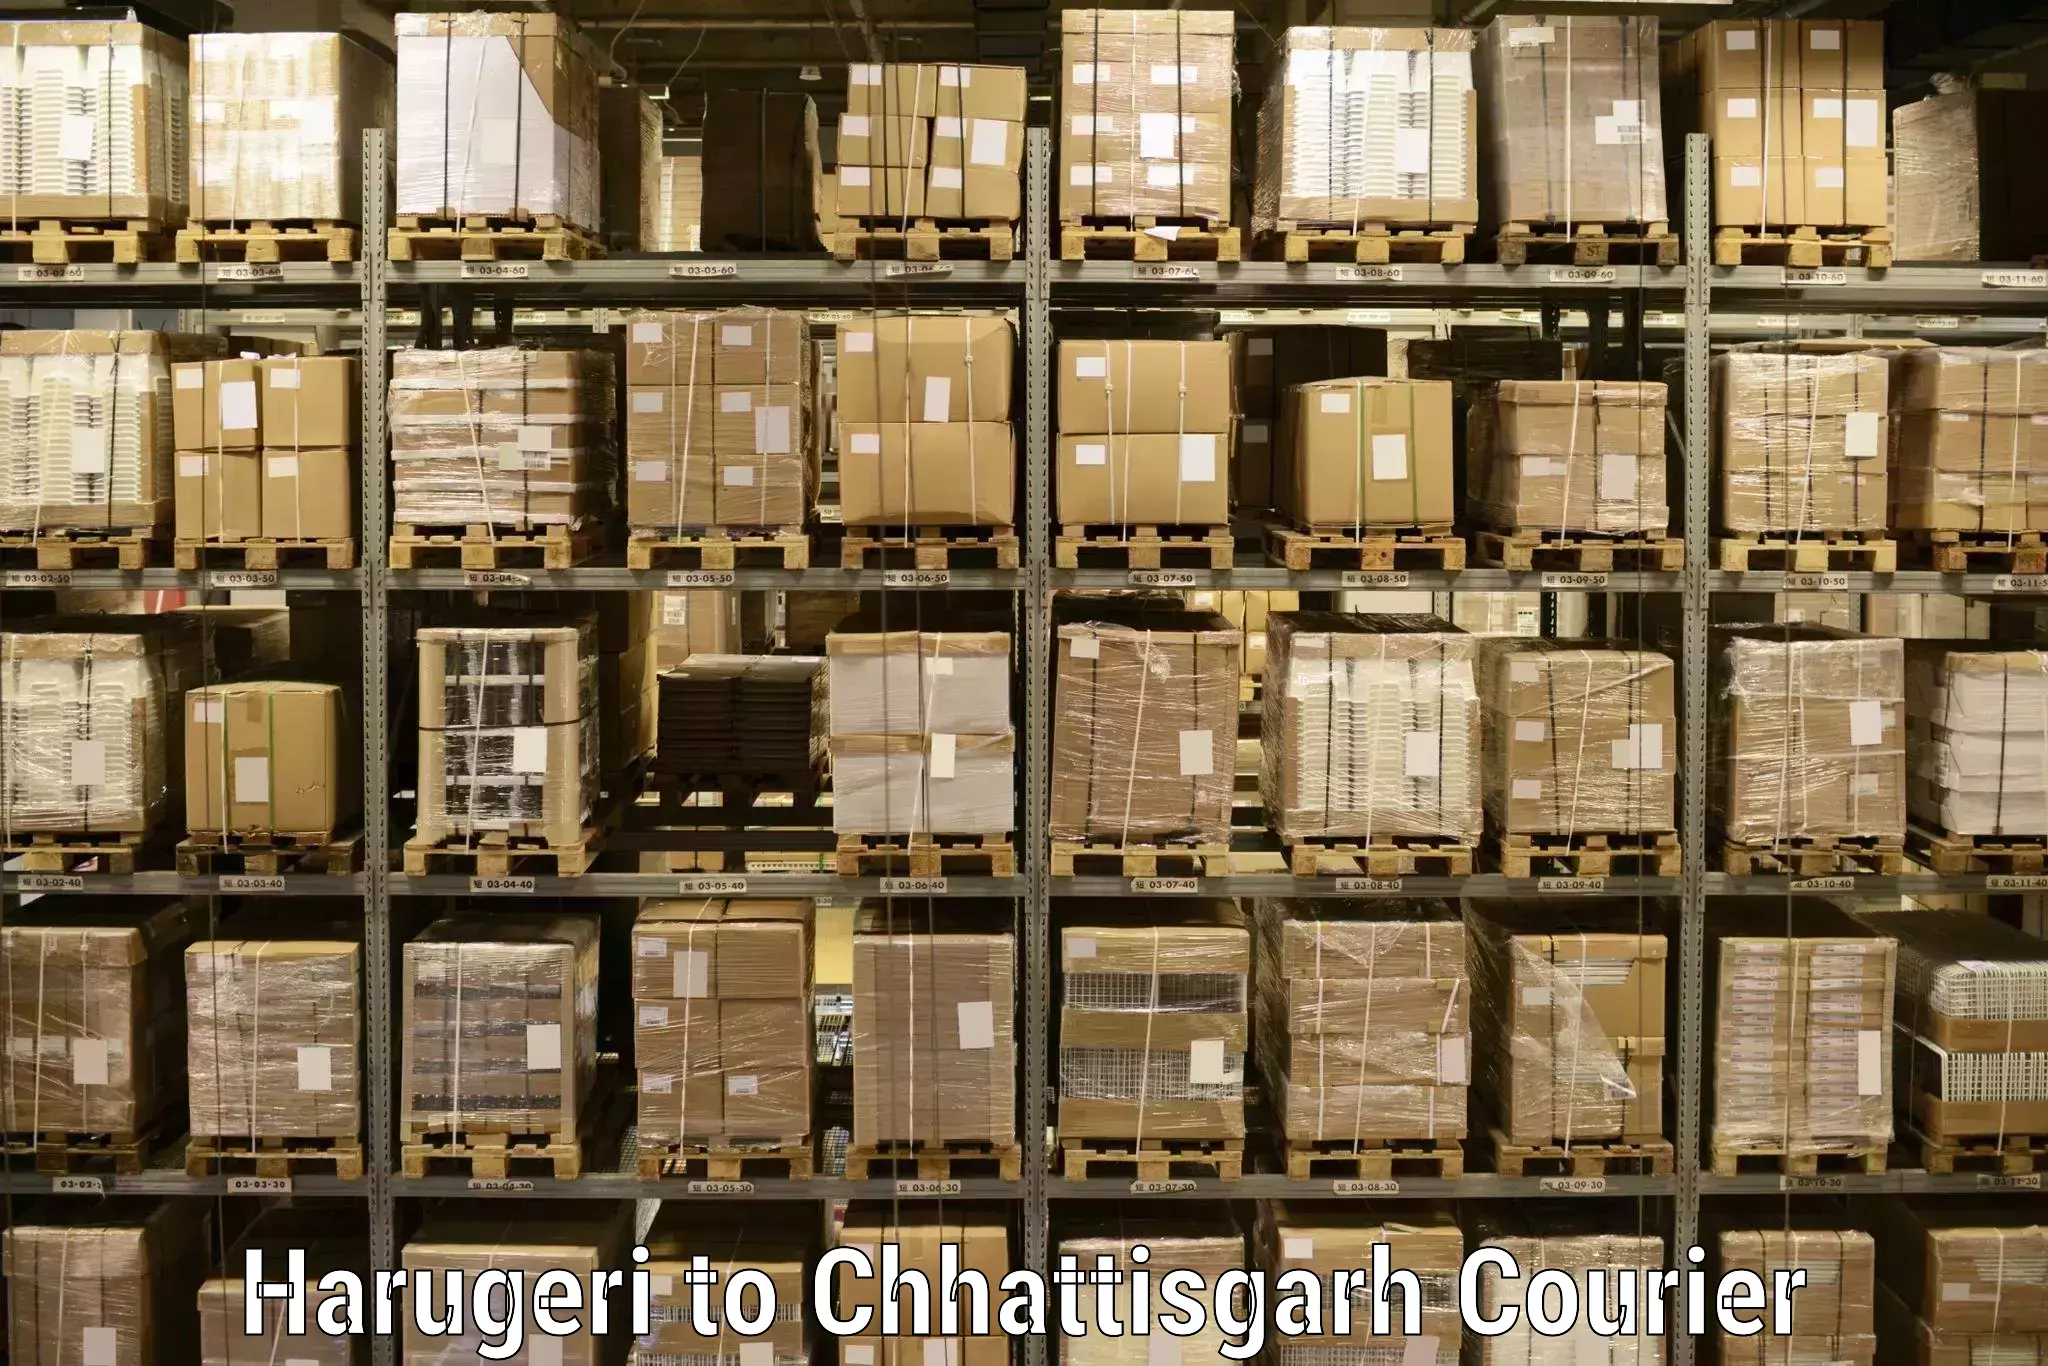 Multi-national courier services Harugeri to Raigarh Chhattisgarh